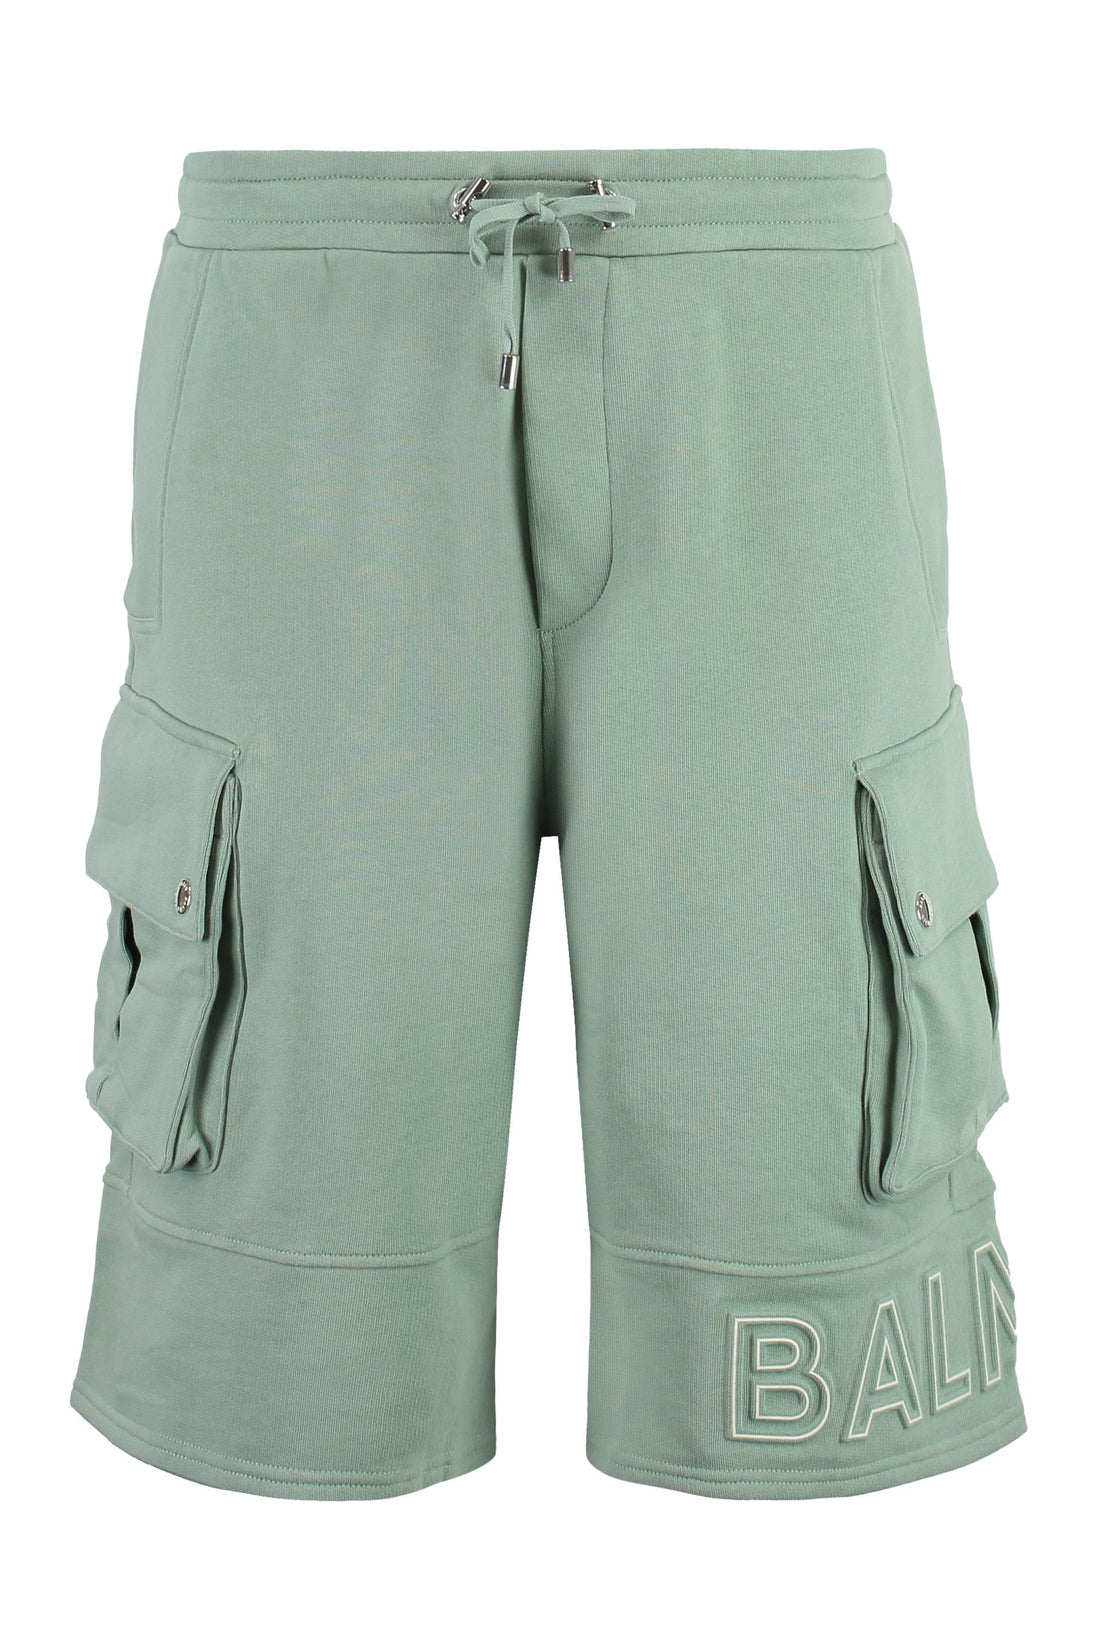 Balmain-OUTLET-SALE-Cotton bermuda shorts-ARCHIVIST